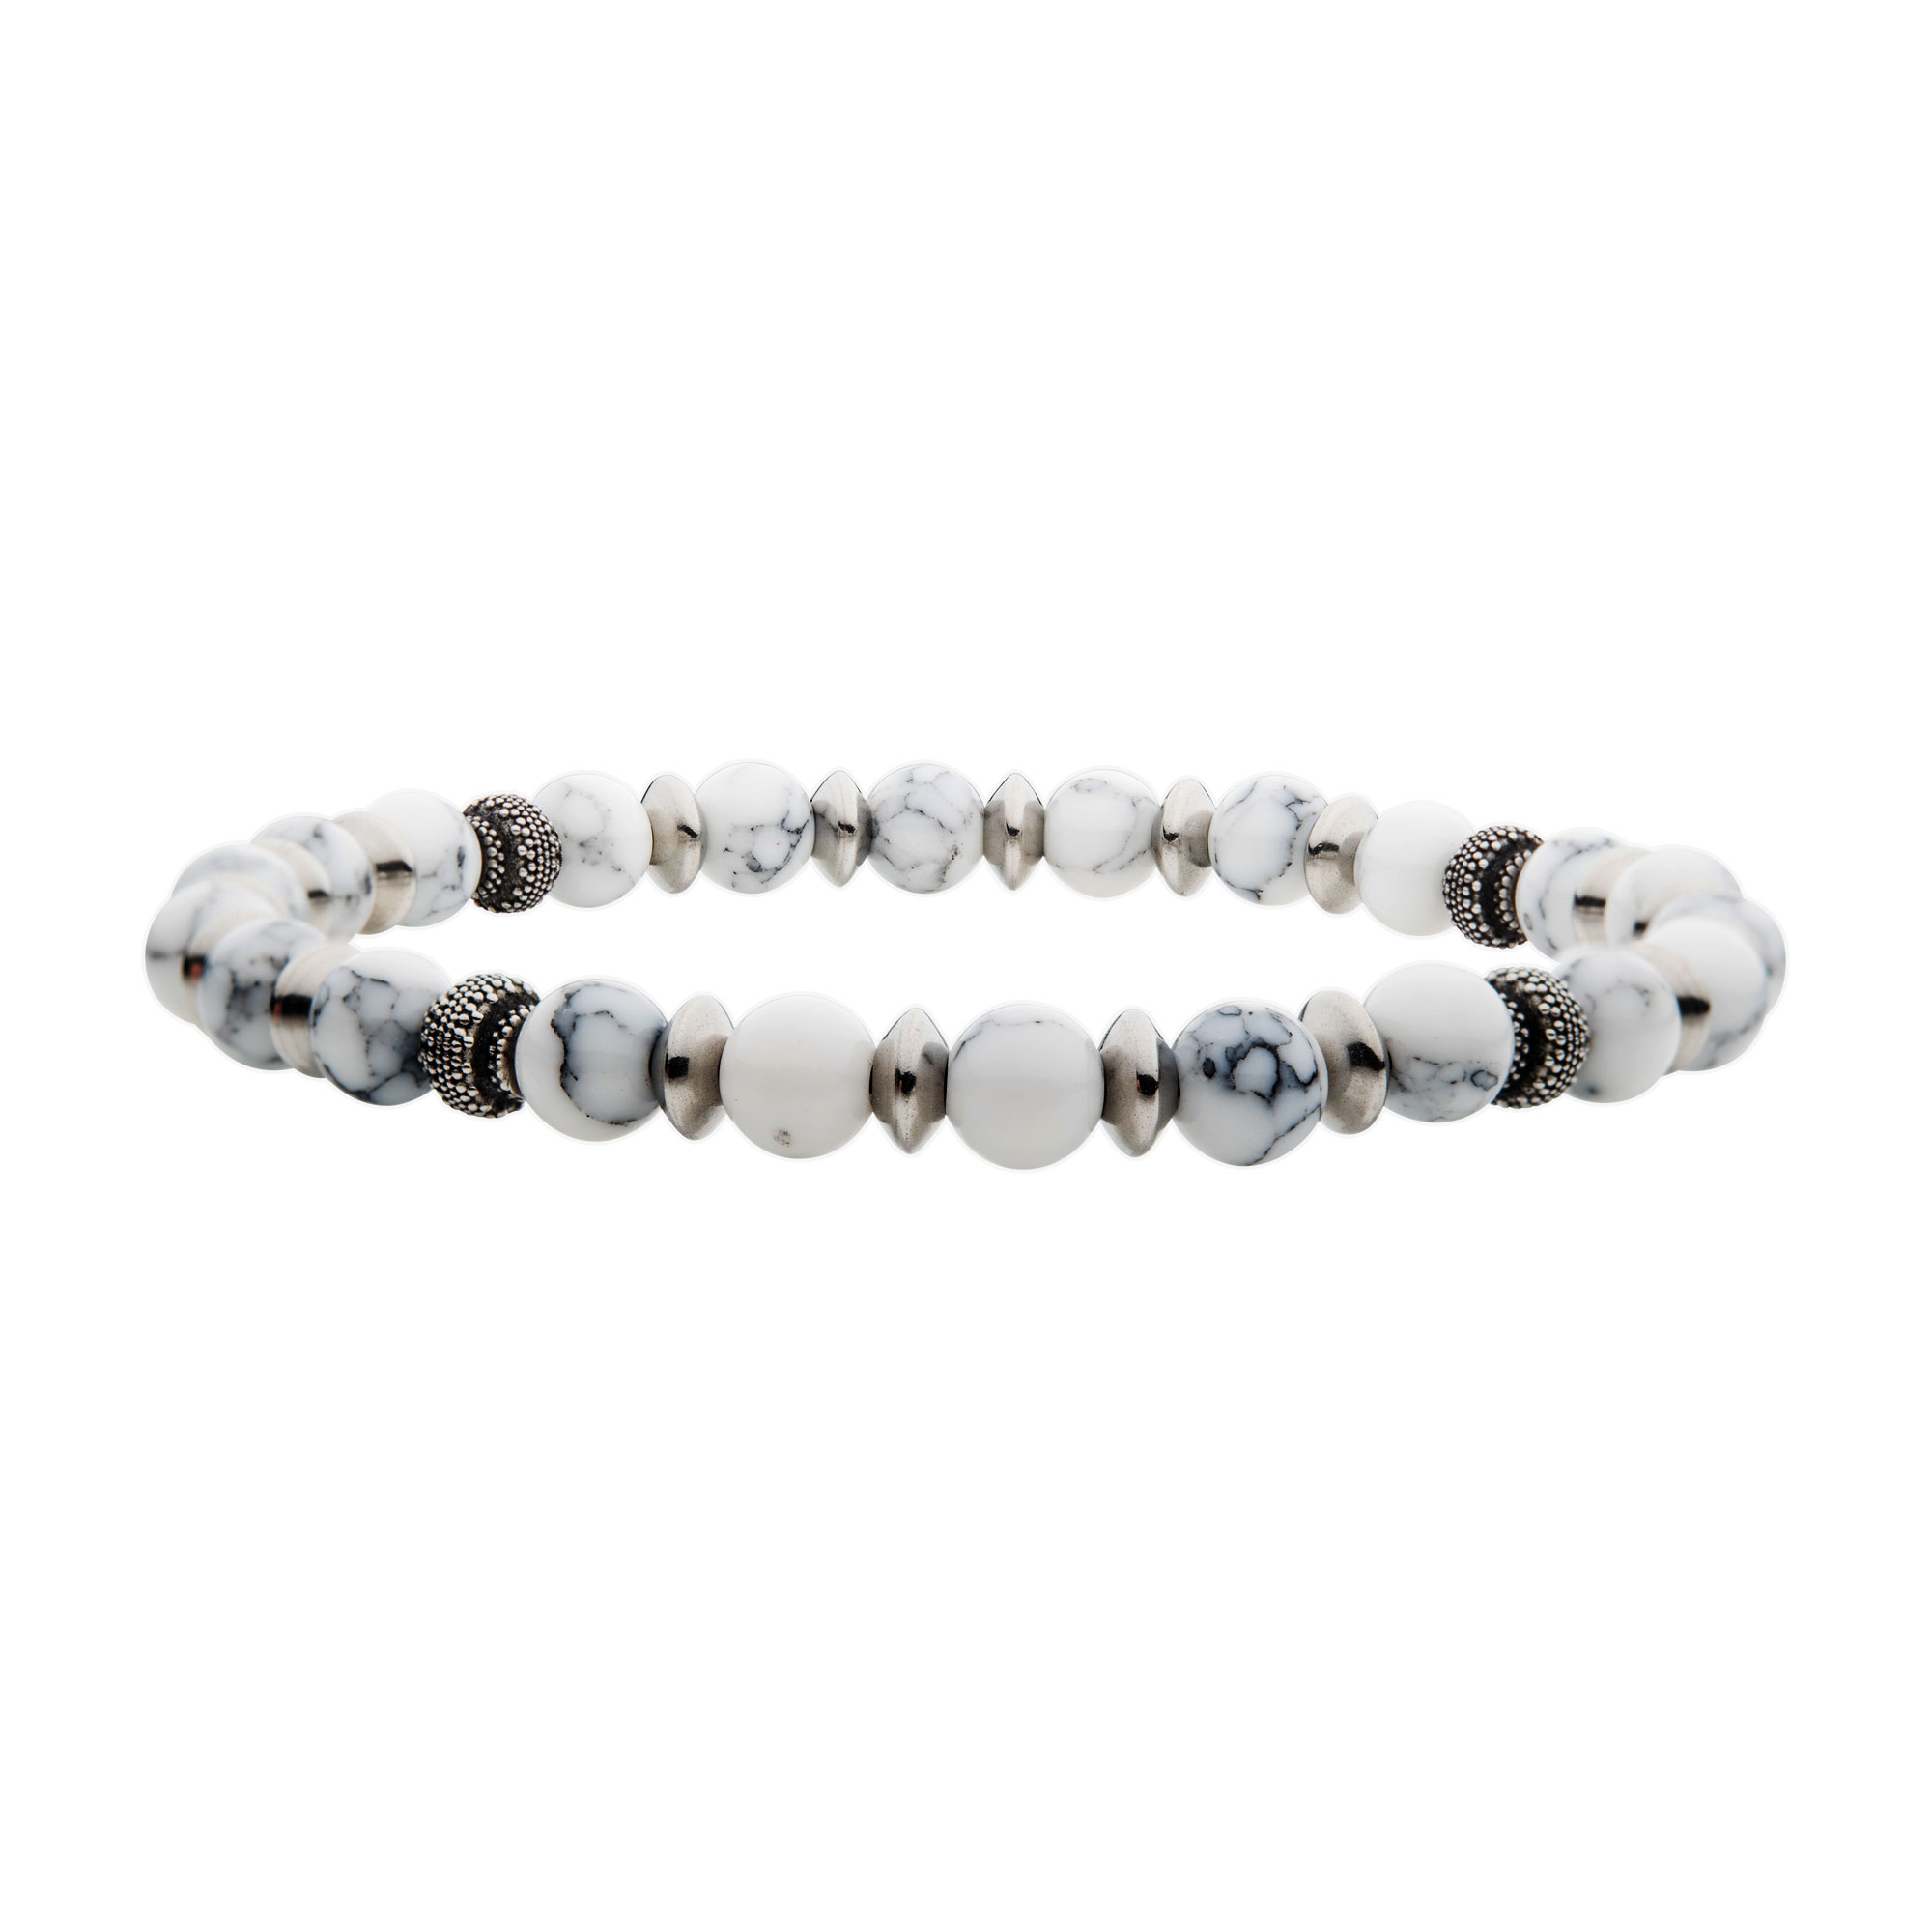 White Howlite Stones with Black Oxidized Beads Bracelet Spath Jewelers Bartow, FL